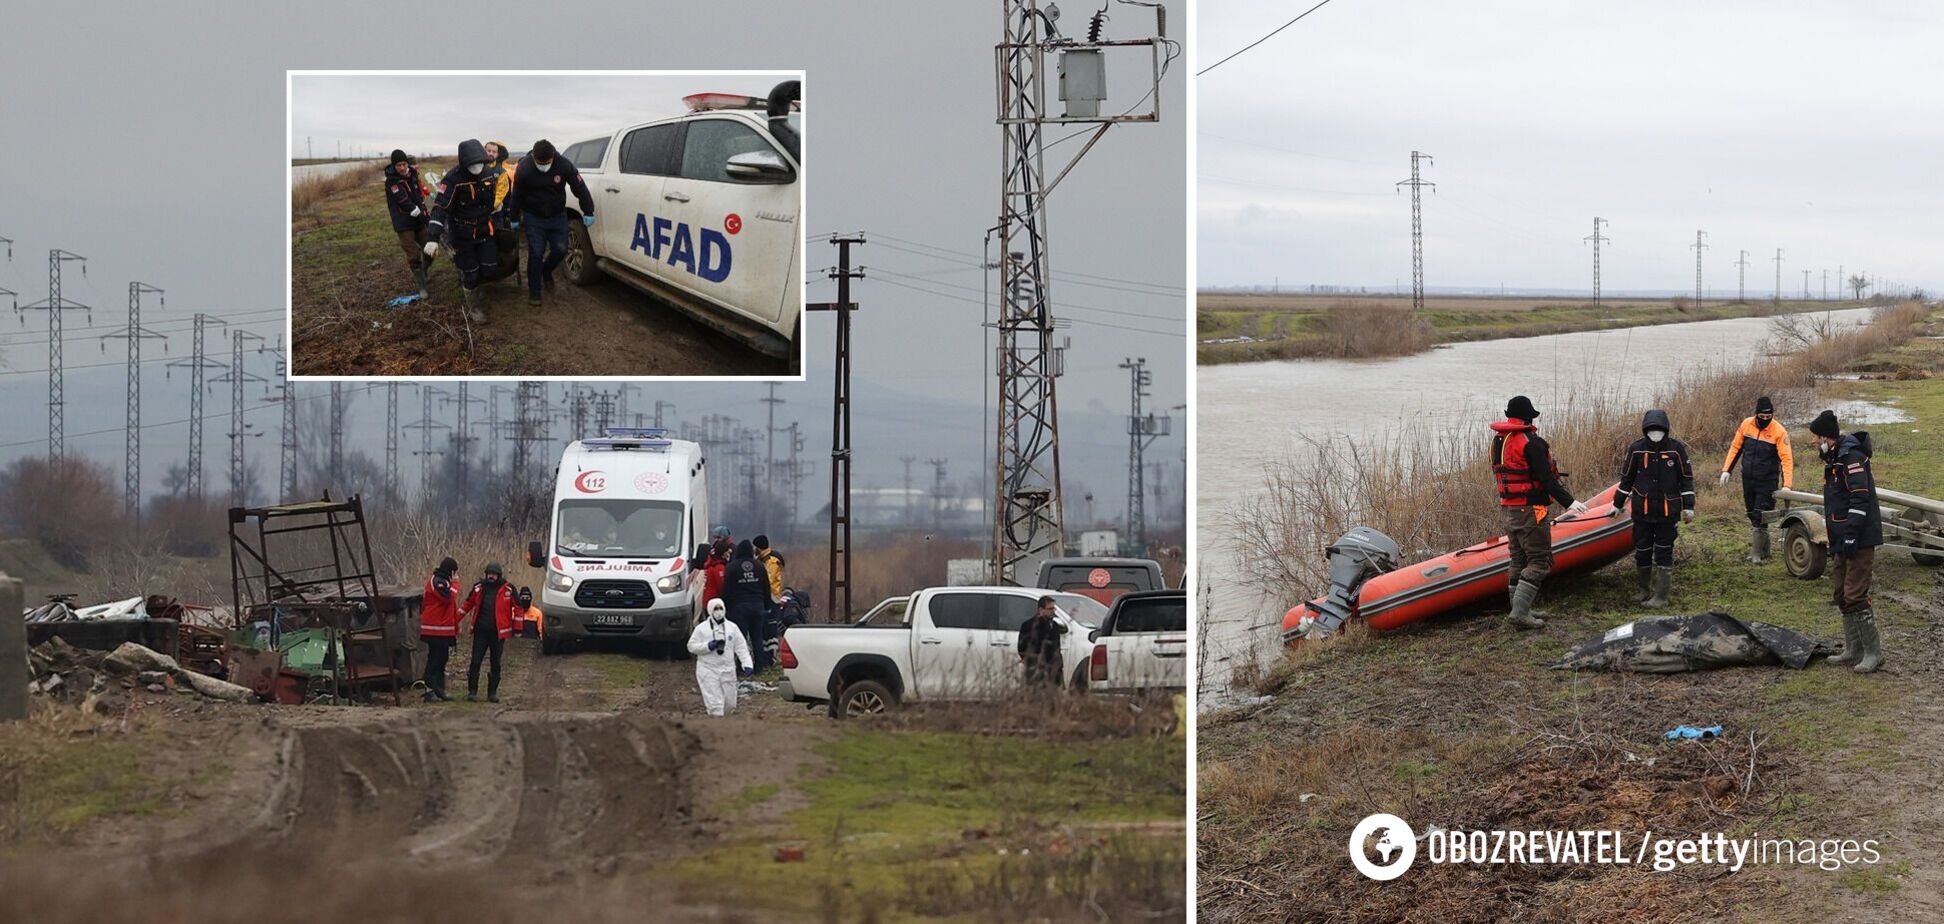 Поблизу кордону Туреччини з Грецією виявили мертвими 12 людей: країни обмінялися звинуваченнями